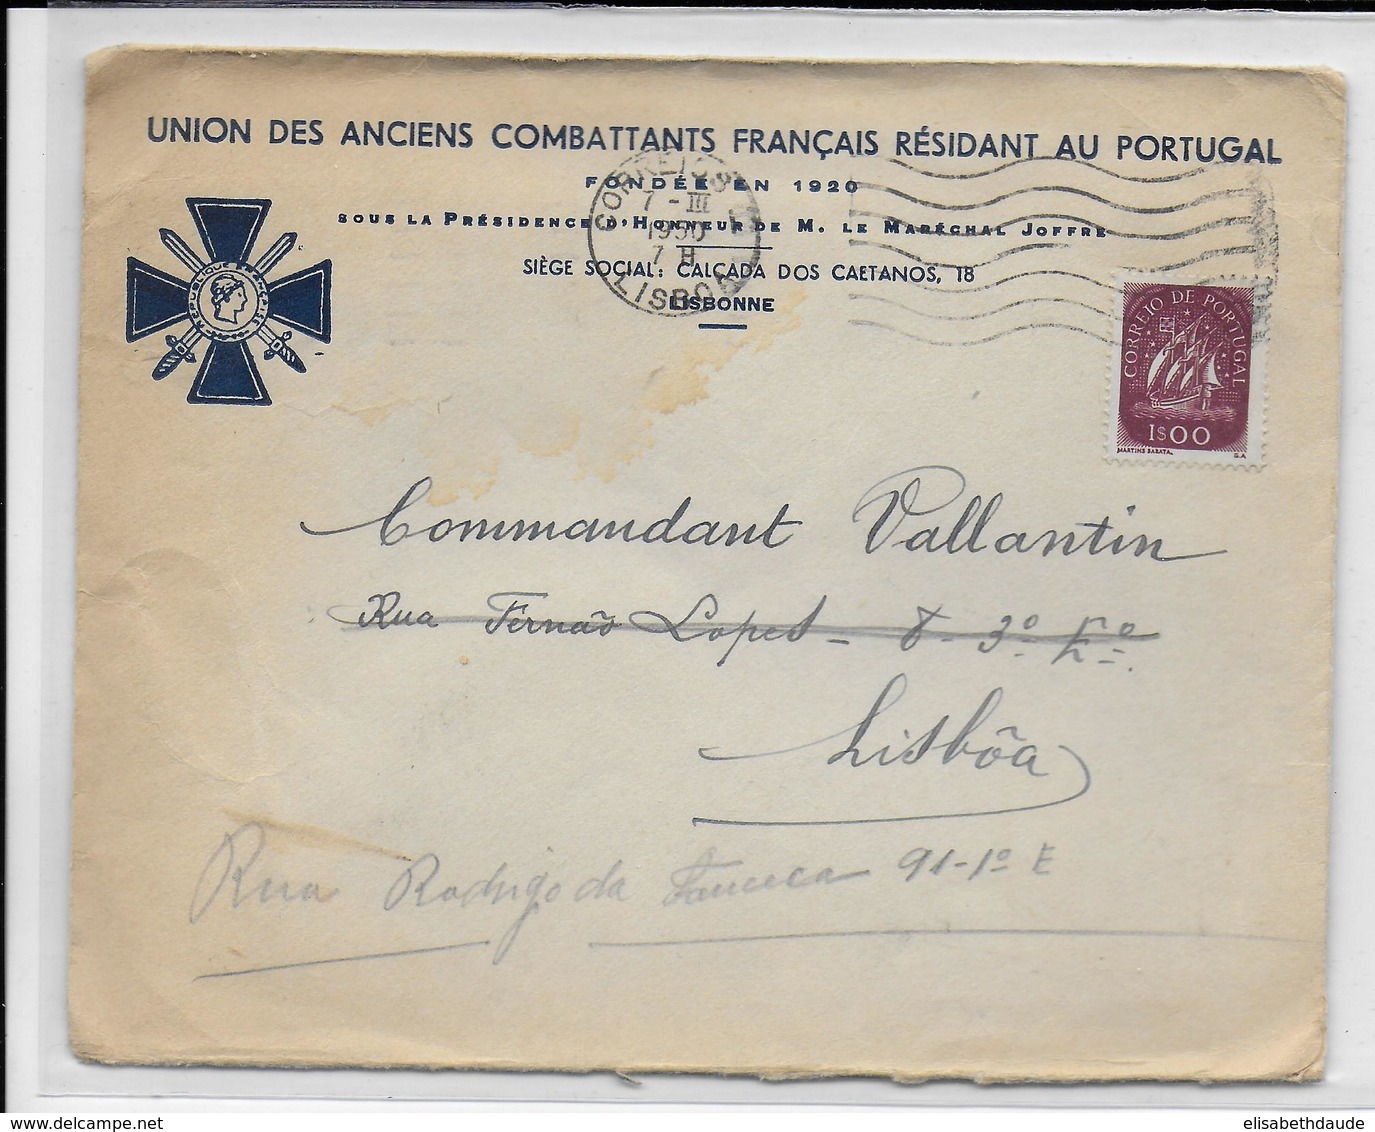 PORTUGAL - 1950 - ENVELOPPE ILLUSTREE "UNION DES ANCIENS COMBATTANTS FRANCAIS RESIDANT AU PORTUGAL" De LISBOA - Covers & Documents